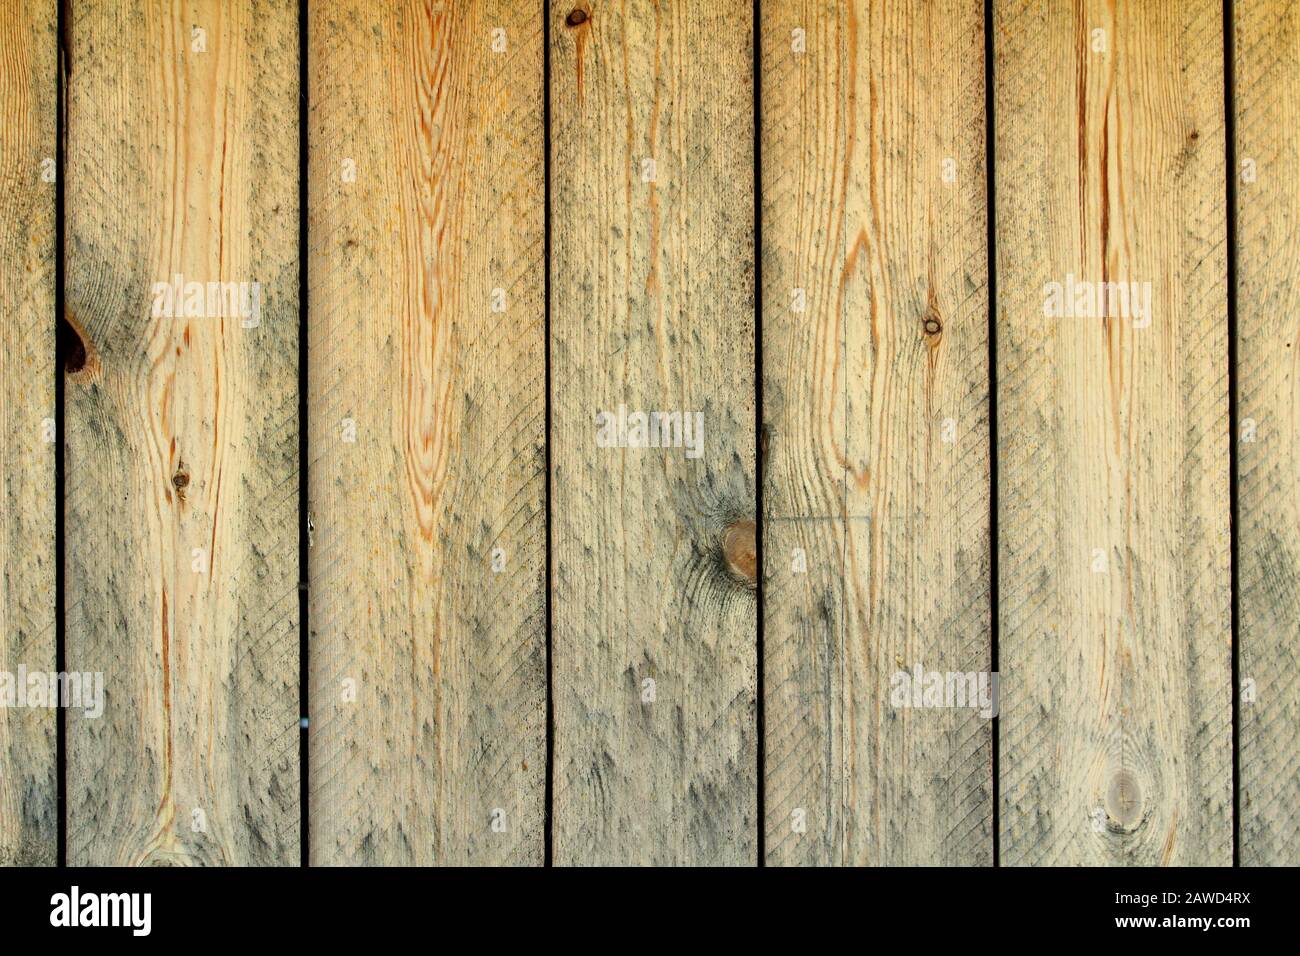 Textura de tablas de madera de casa rustica. Stock Photo